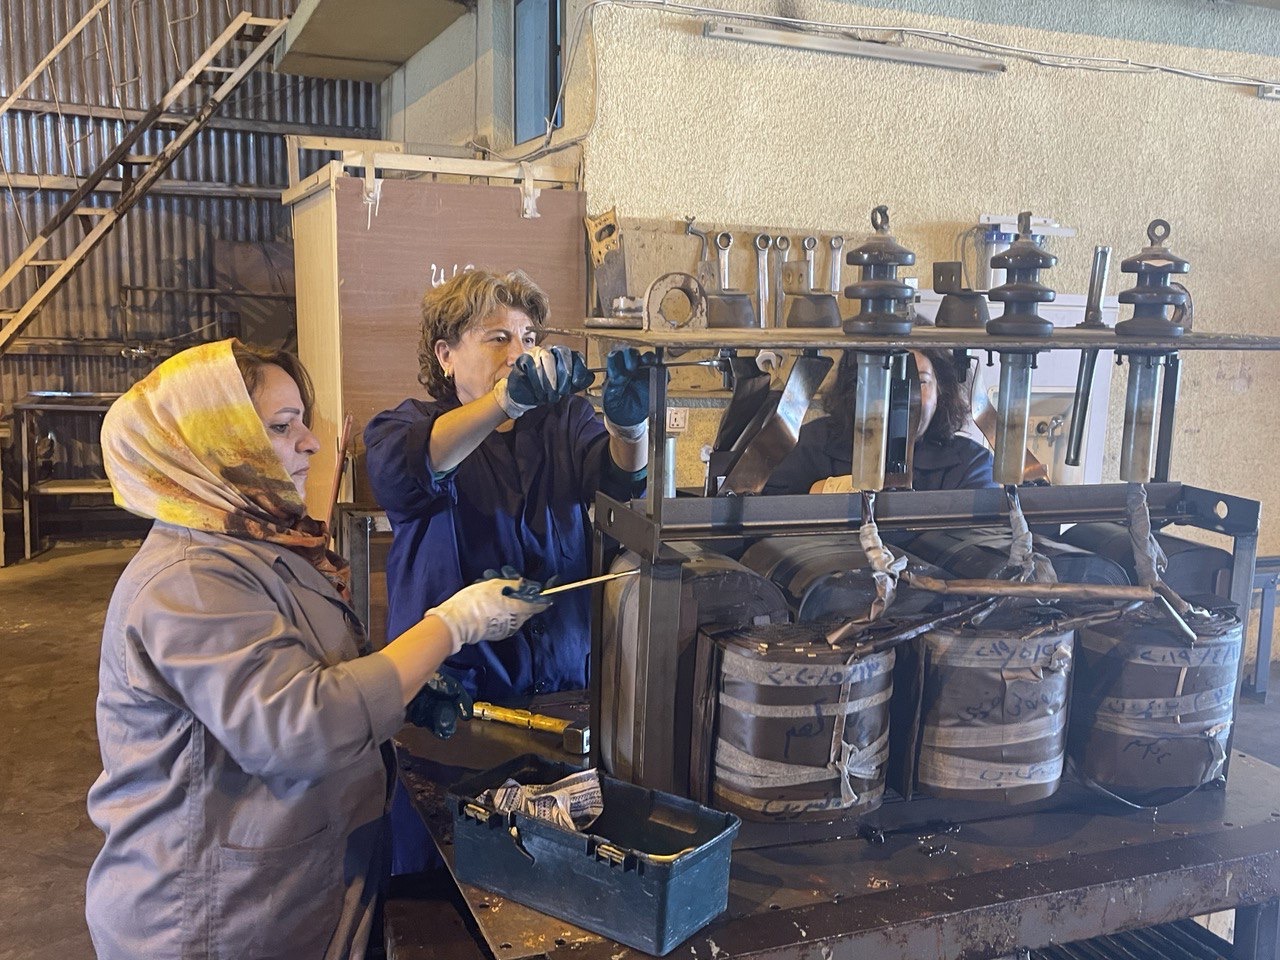 السليمانية /كانون الثاني/ زميلات نيكار خلال عملهن في المصنع  تصوير:عمر الهلالي